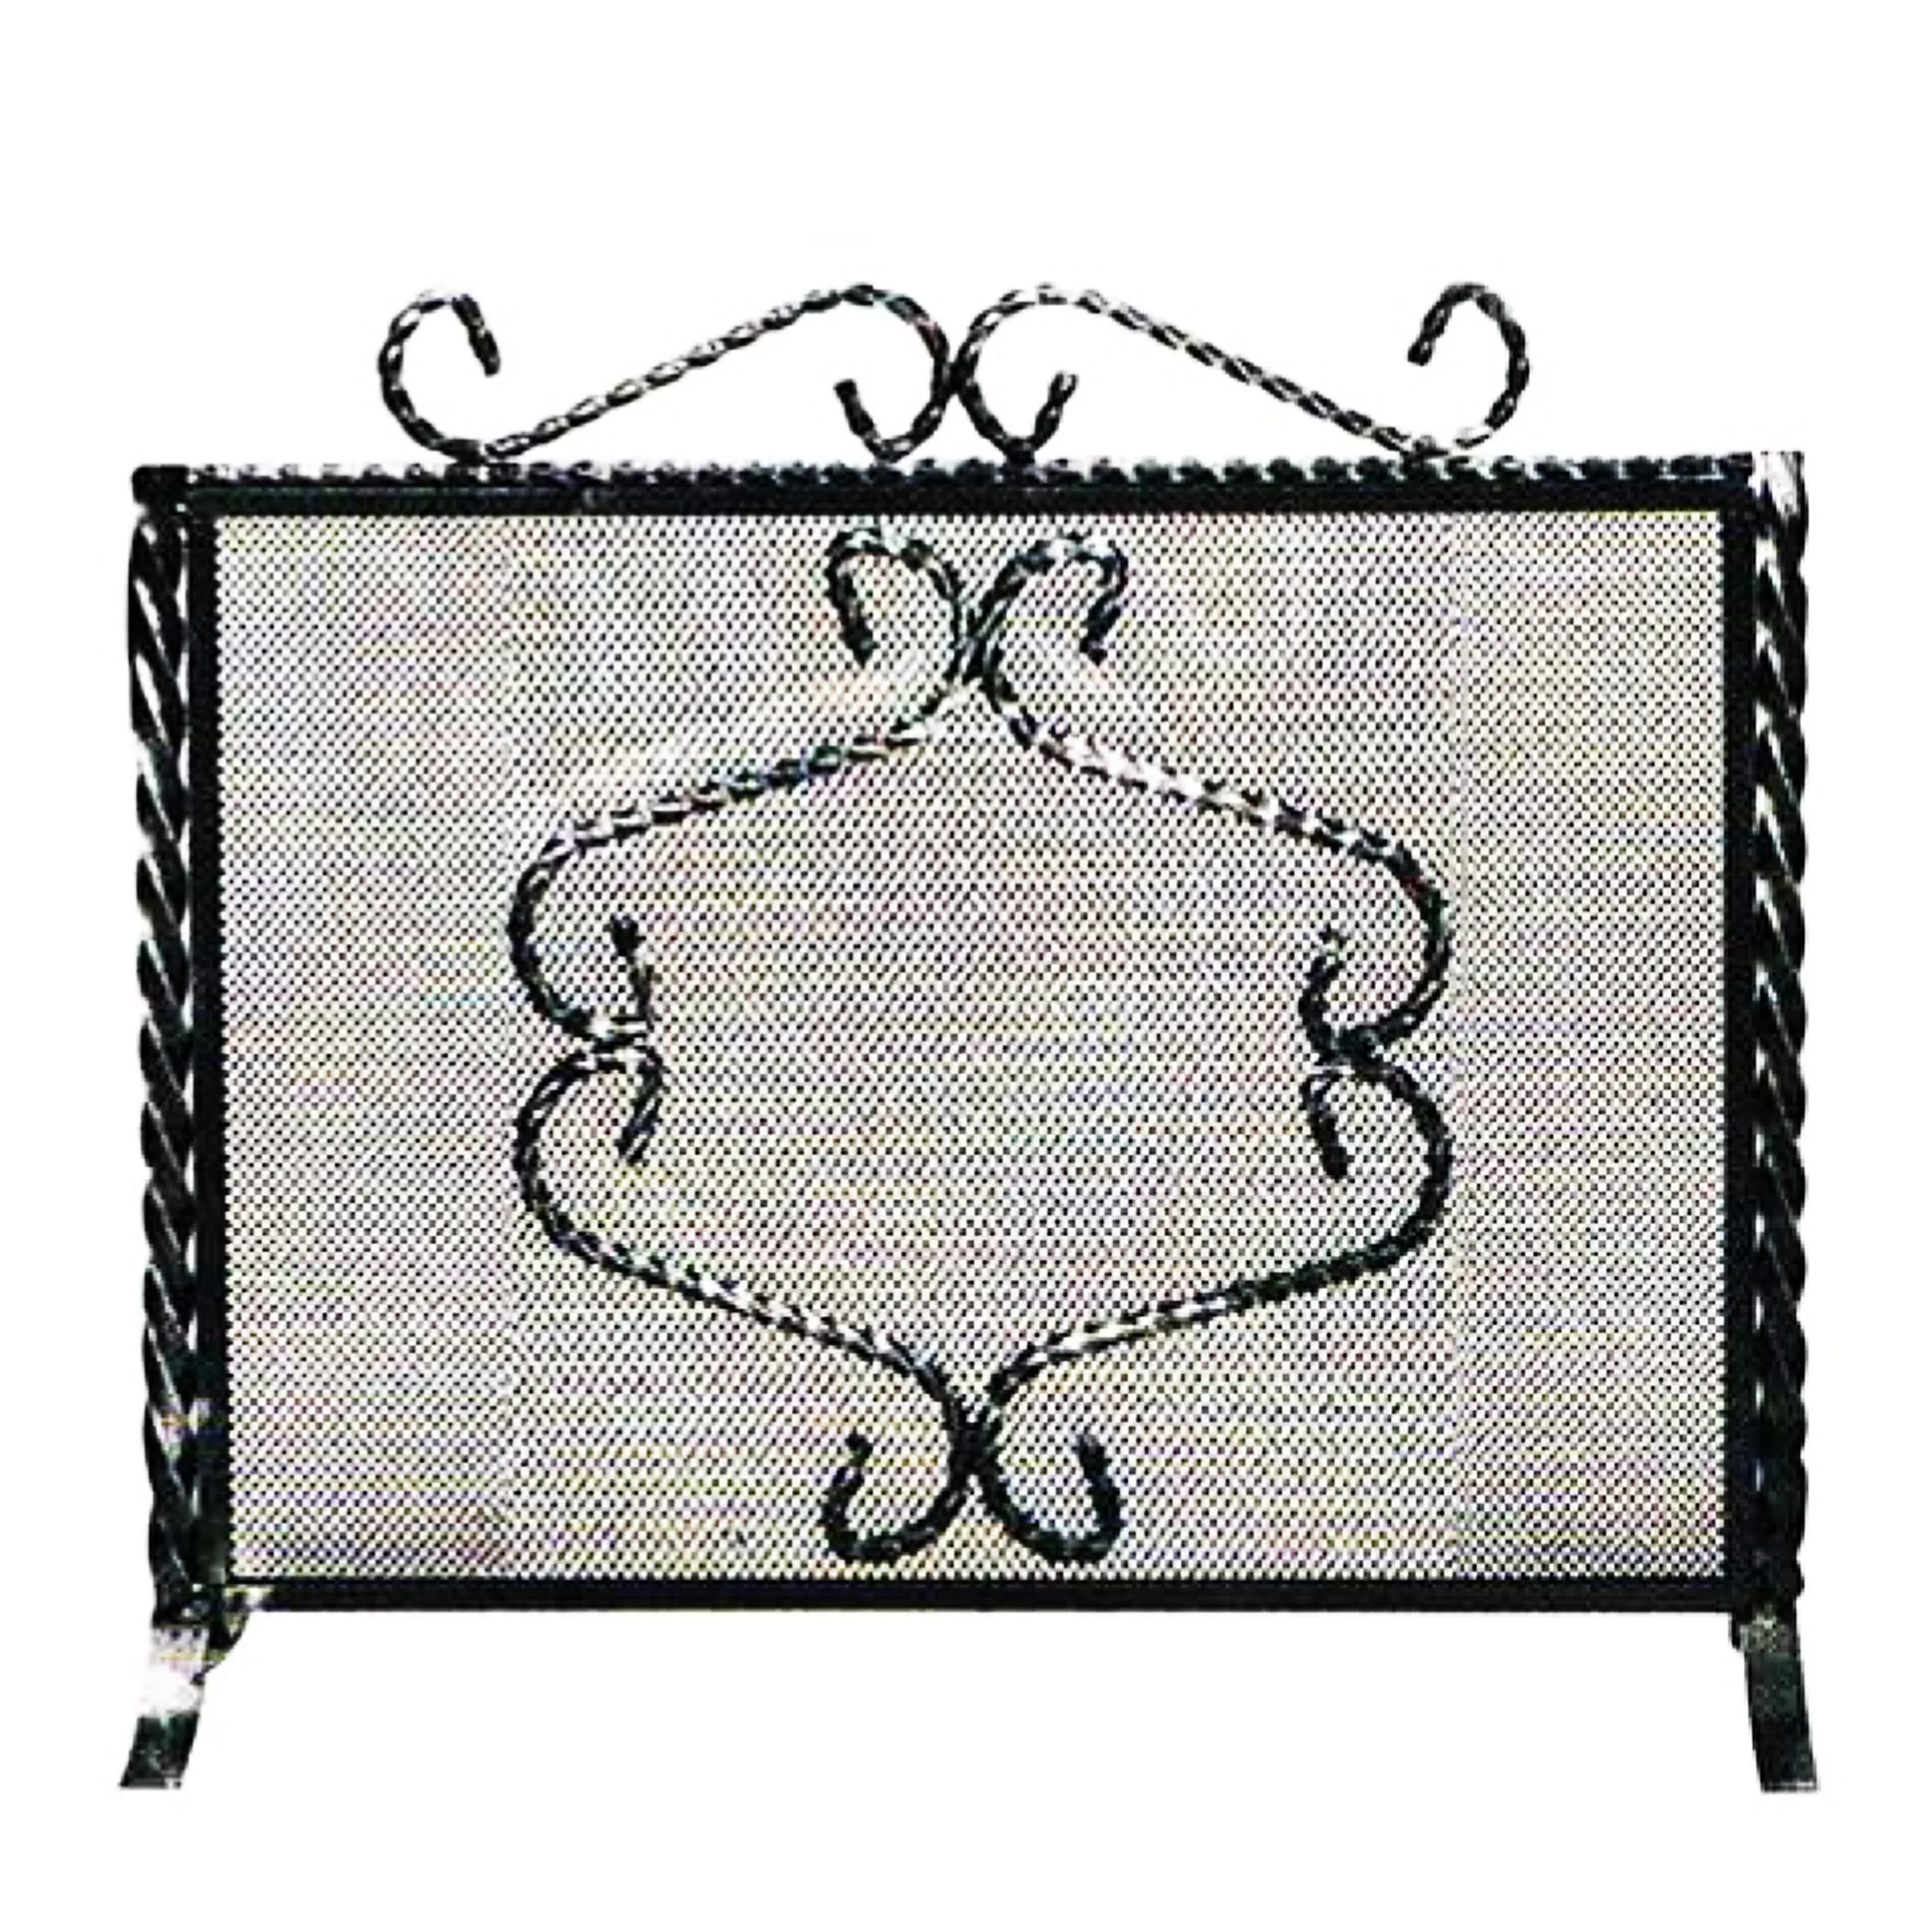 Parascintille per camino in ferro battuto forgiatoe 64xh50 cm lavorazione artigianale stile classico, rete nera